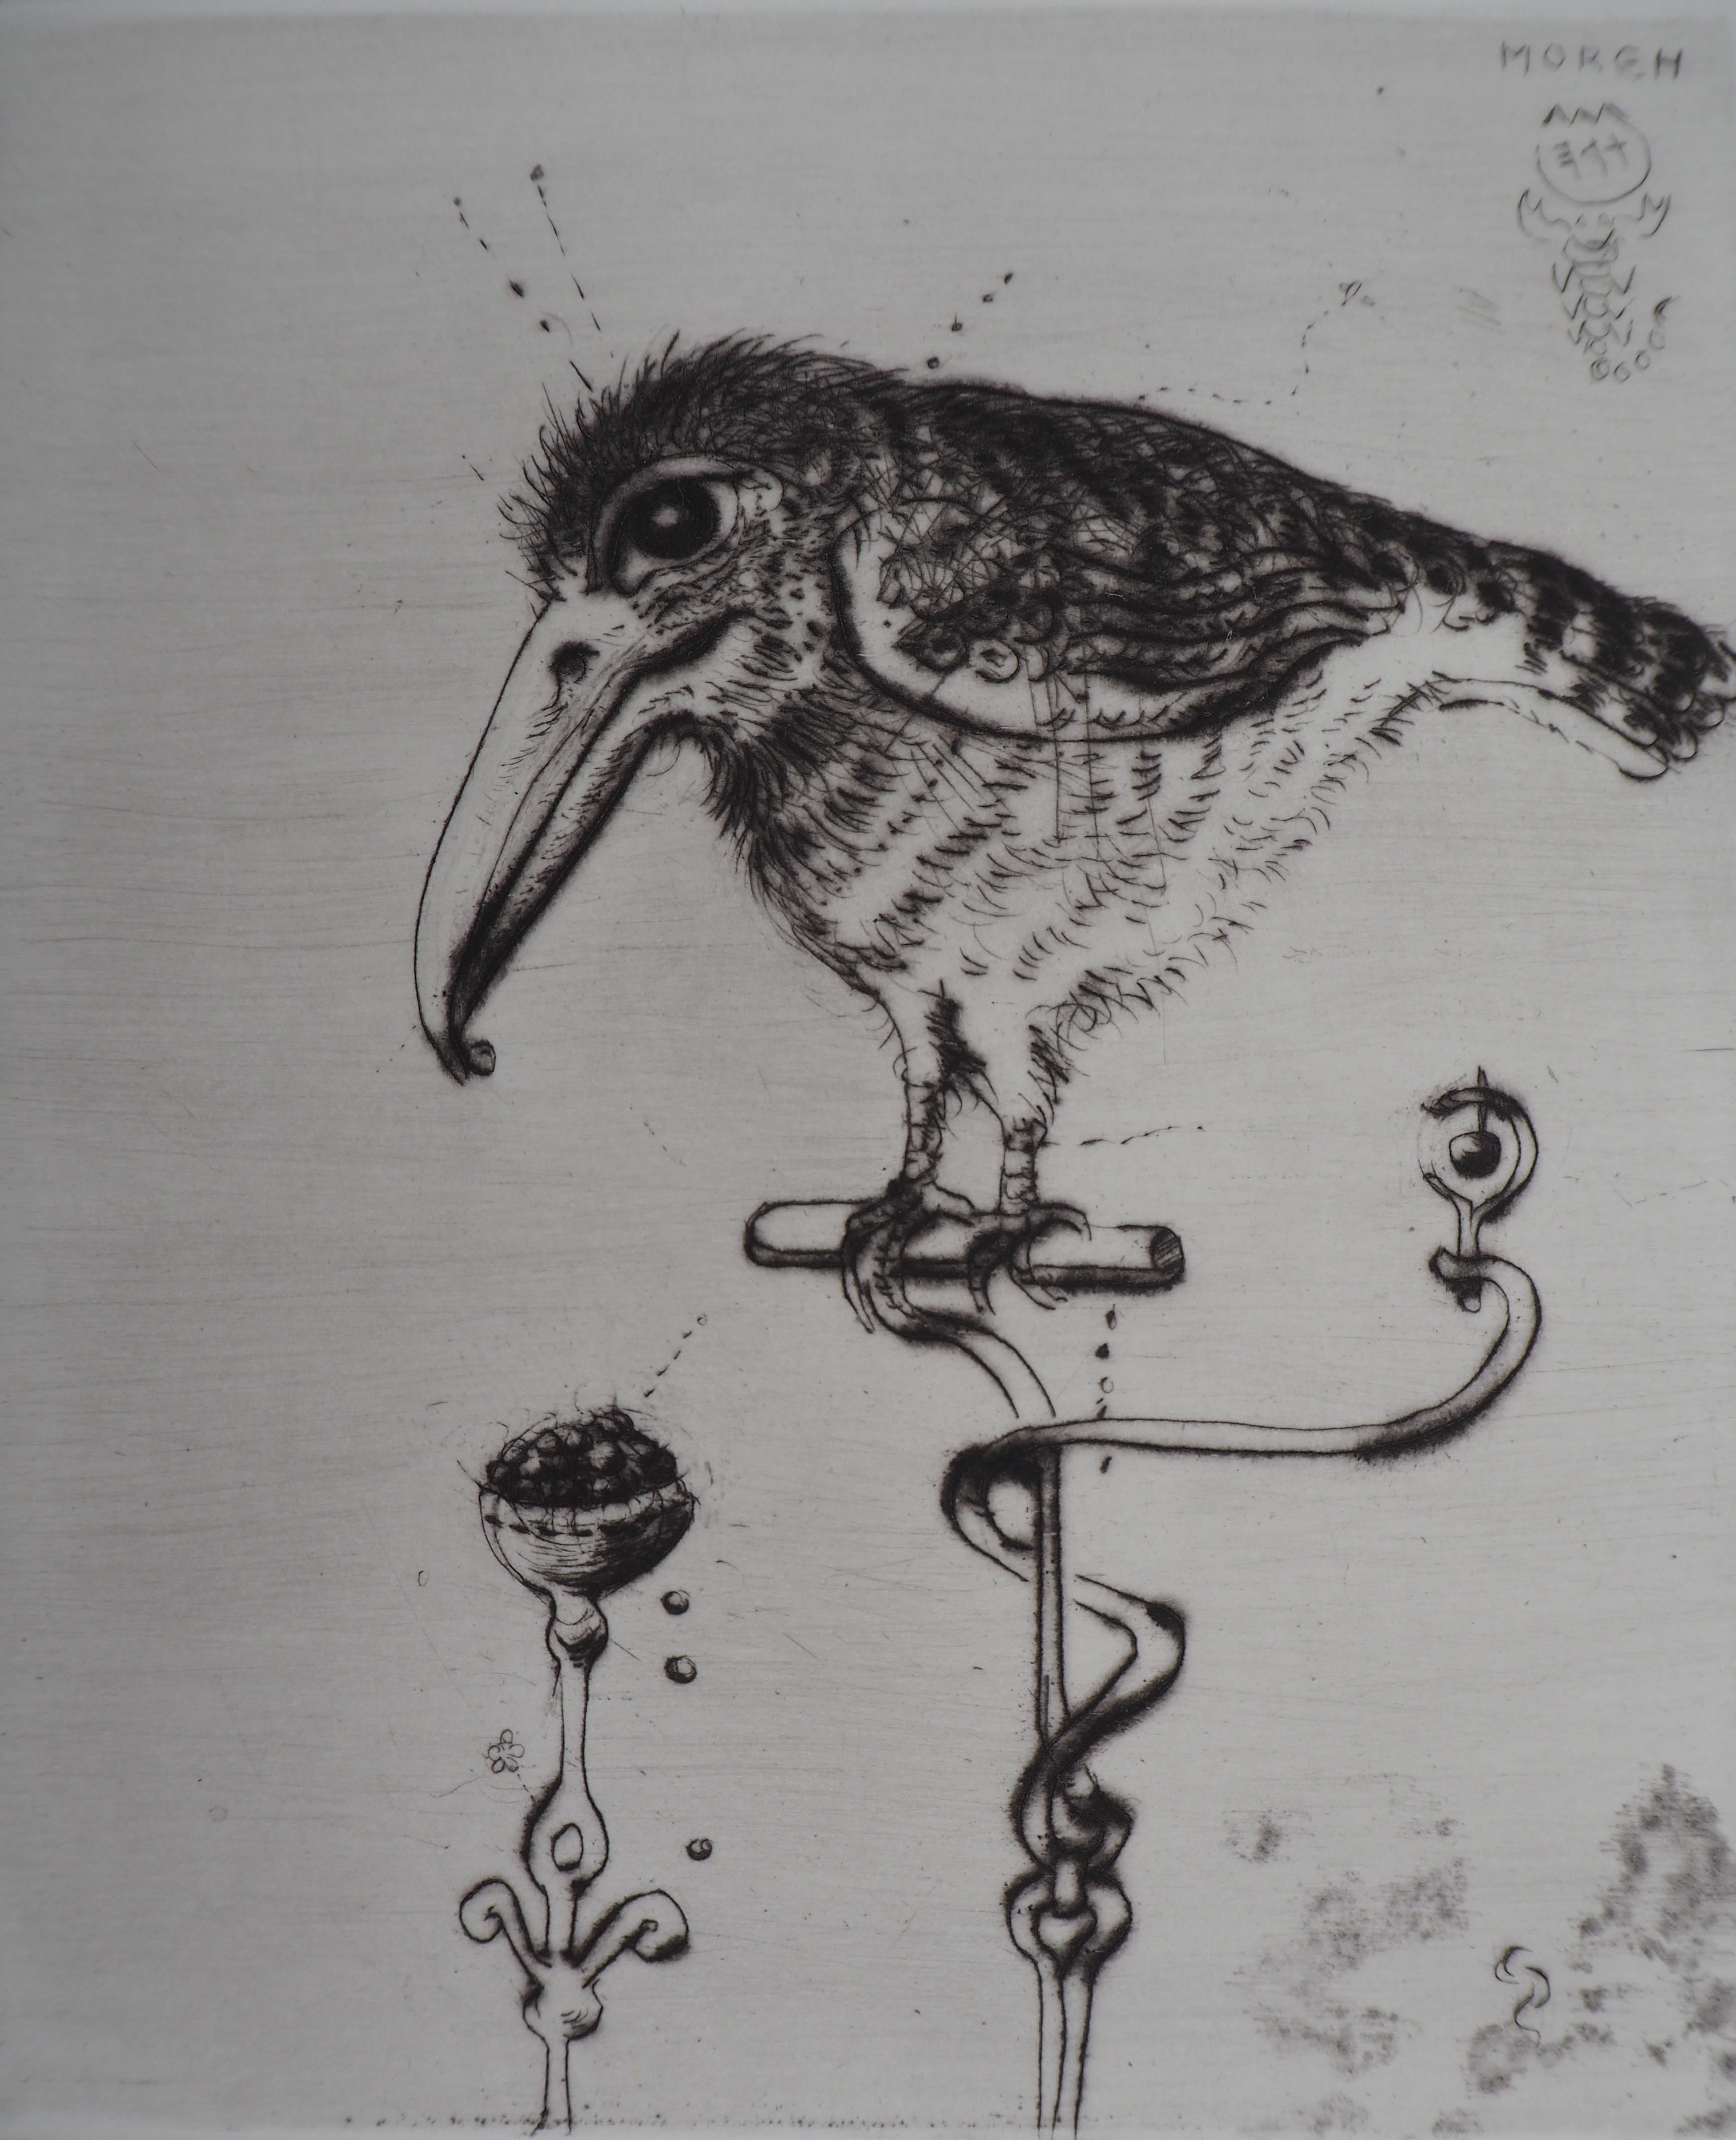 The Little Bird, gravure originale signée à la main, édition limitée à 75 exemplaires - Moderne Print par Mordecai Moreh